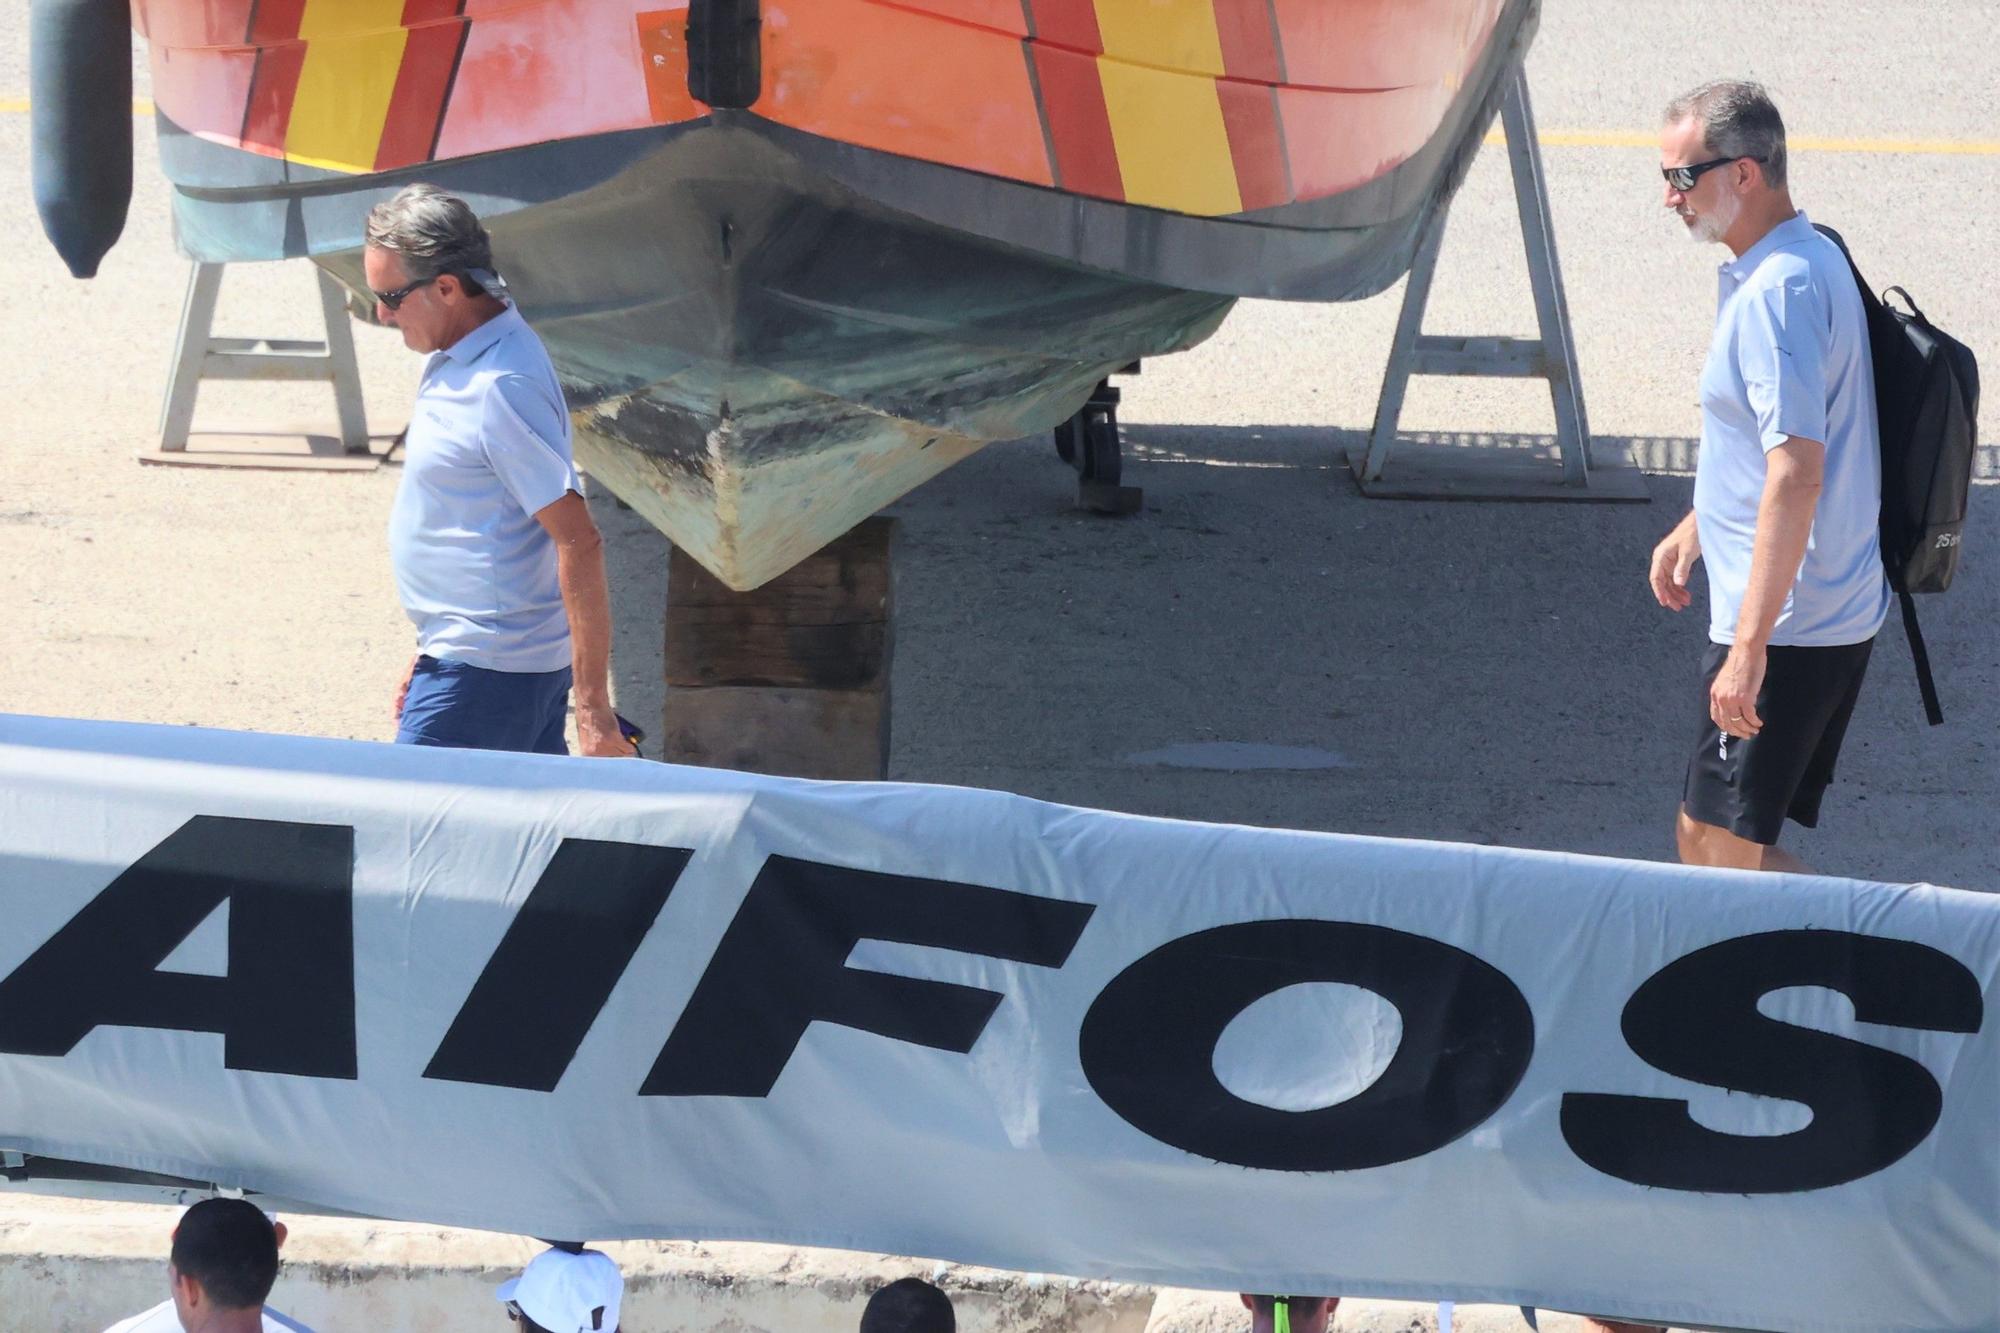 El Rey Felipe se embarca en el 'Aifos' otro año más